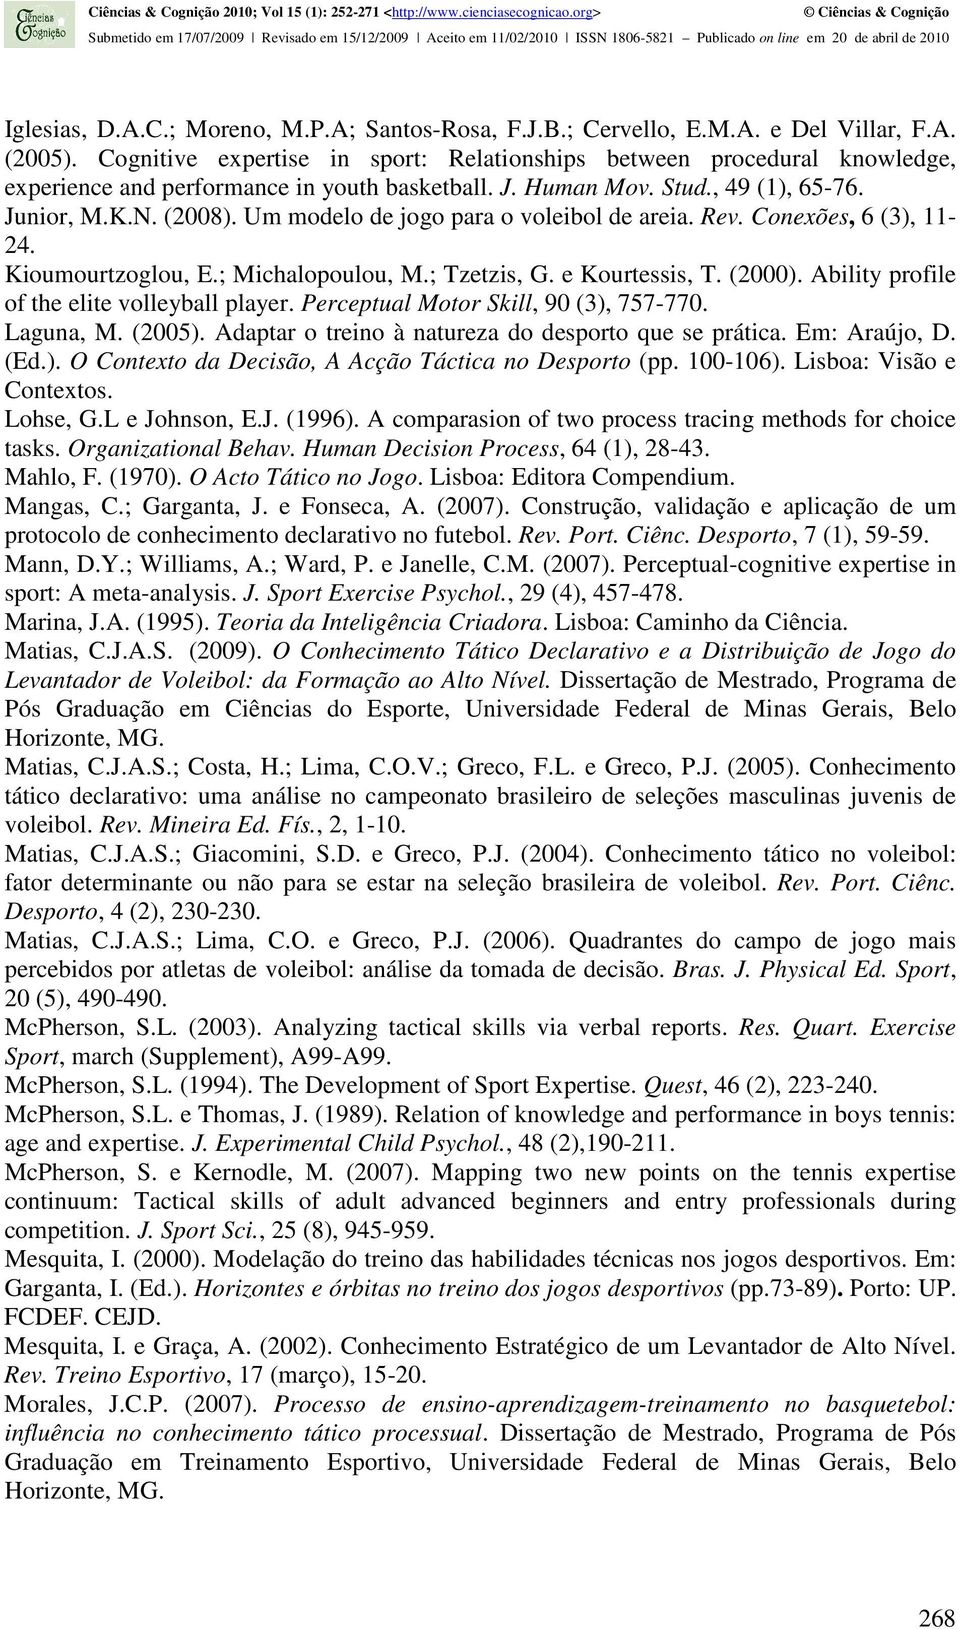 Um modelo de jogo para o voleibol de areia. Rev. Conexões, 6 (3), 11-24. Kioumourtzoglou, E.; Michalopoulou, M.; Tzetzis, G. e Kourtessis, T. (2000). Ability profile of the elite volleyball player.